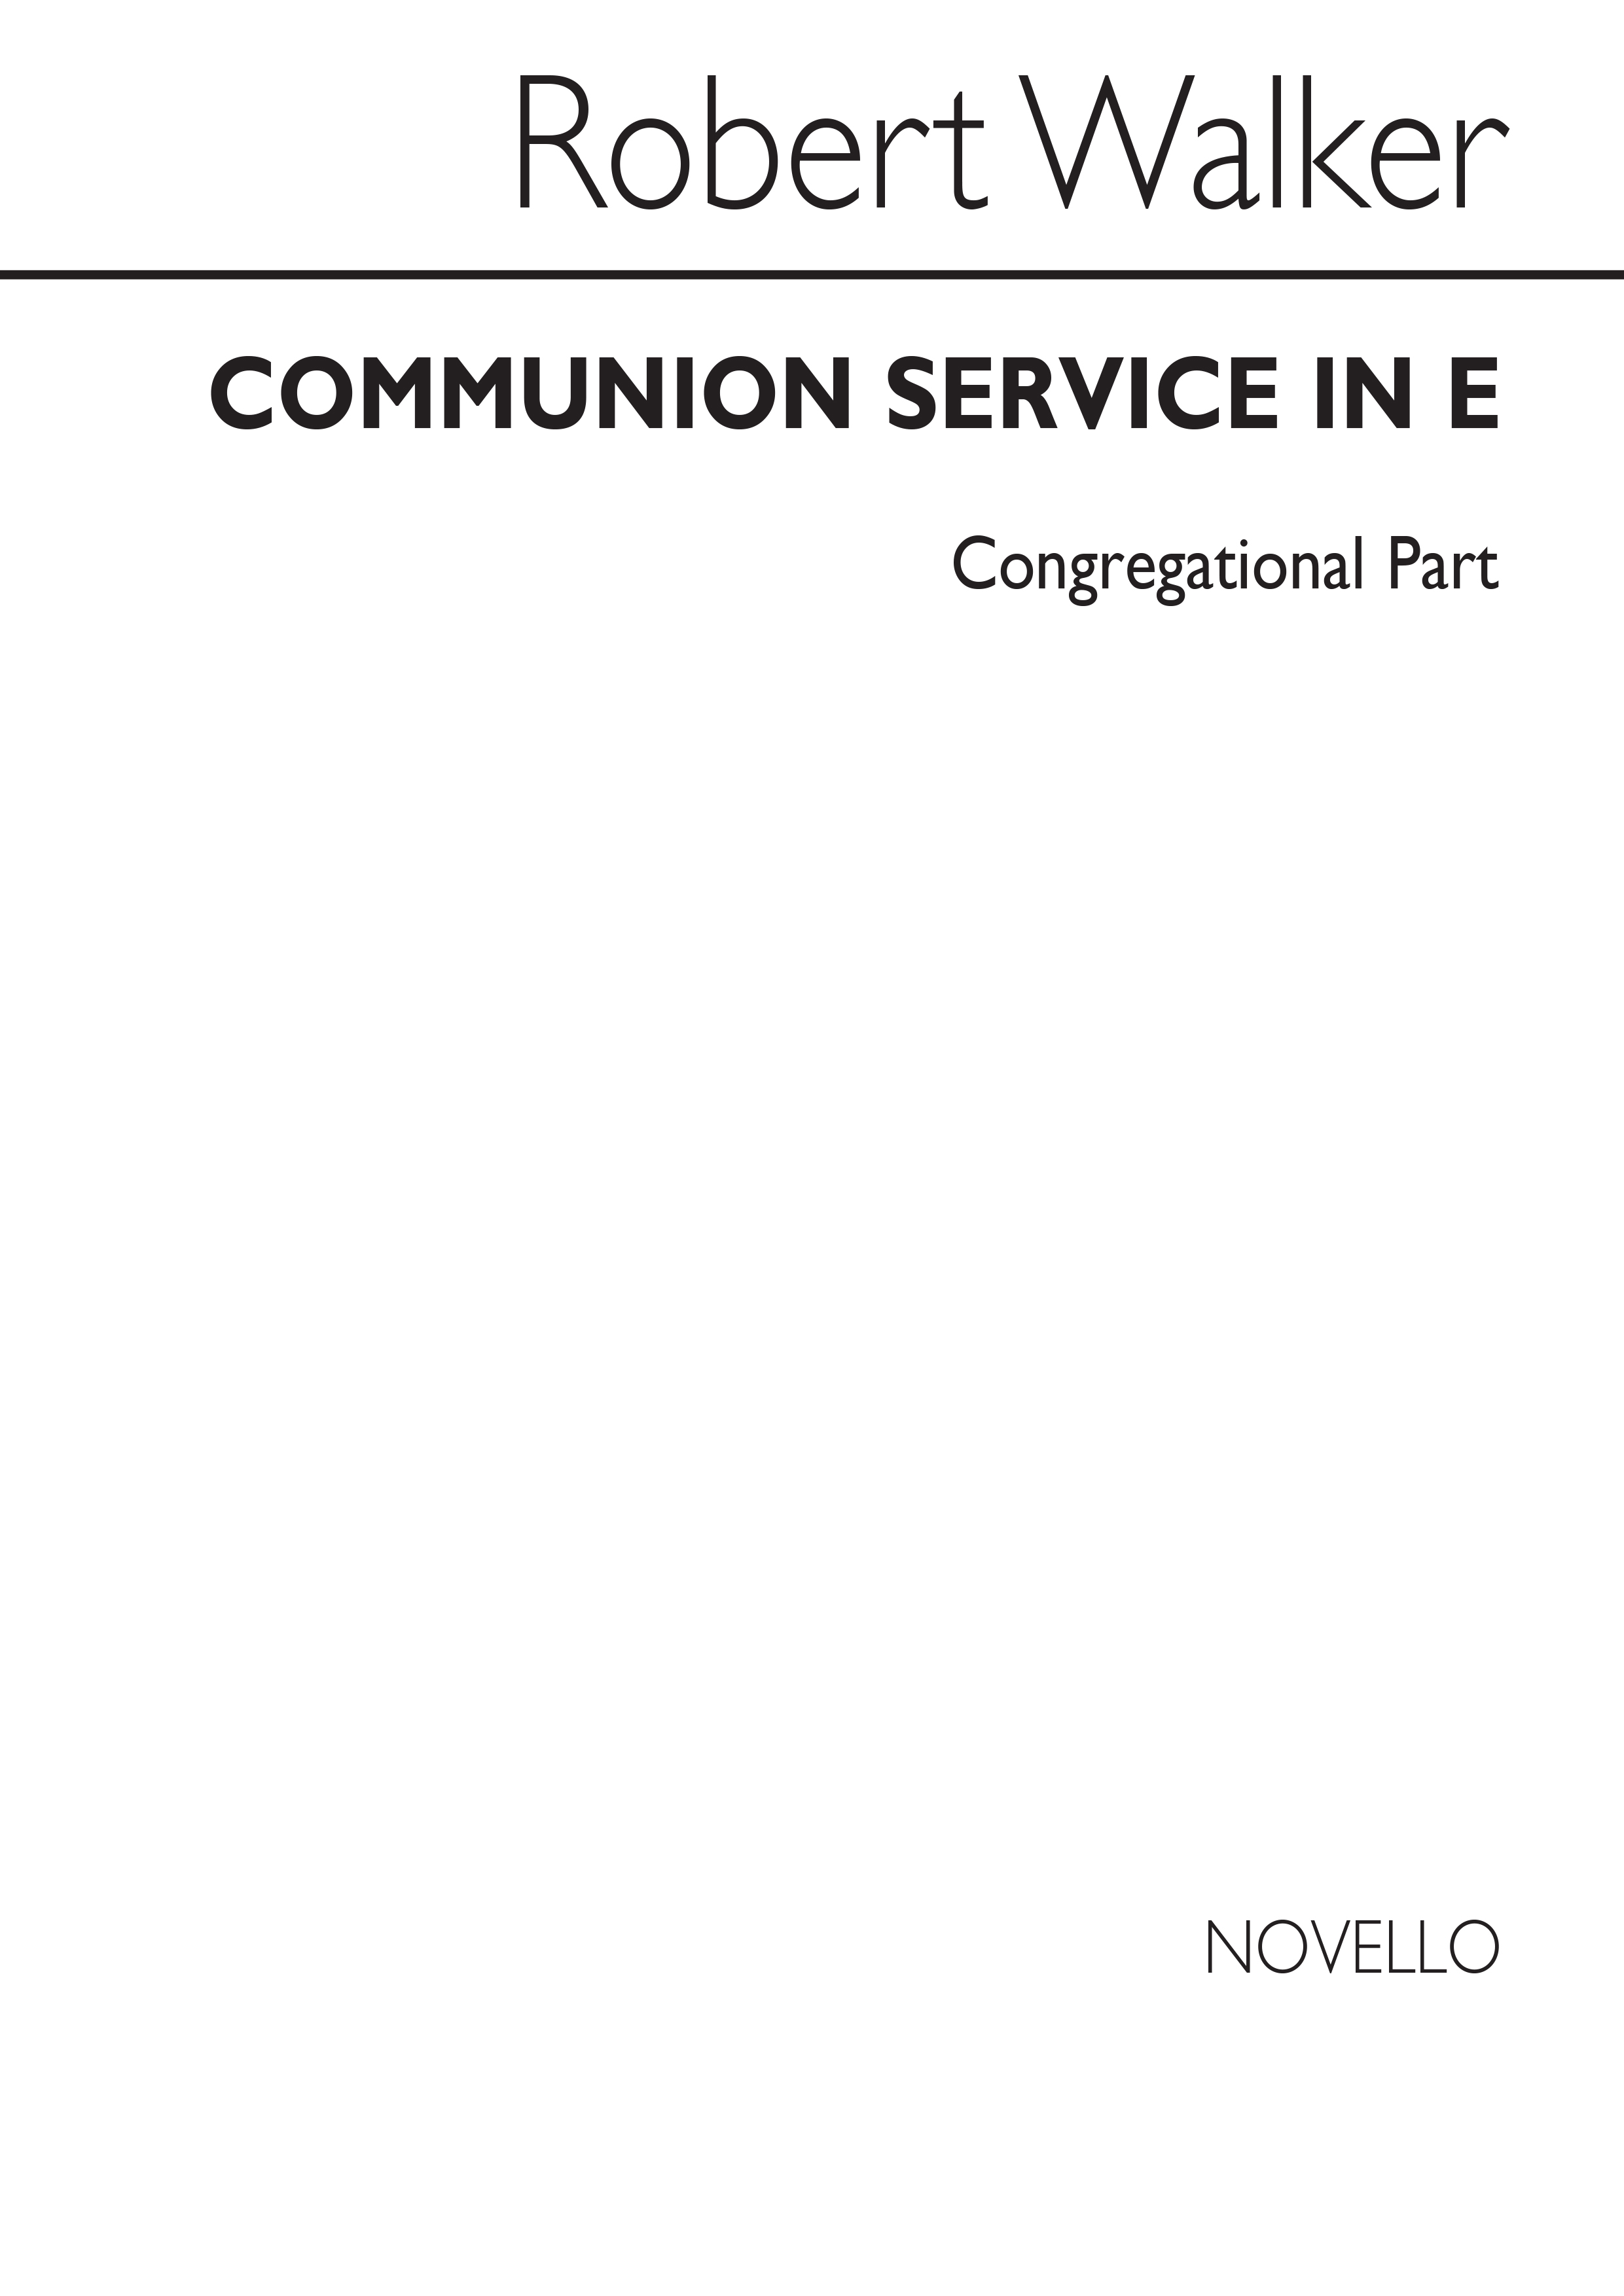 Robert Walker: Communion Service In E Series 3 (Congregation Part)